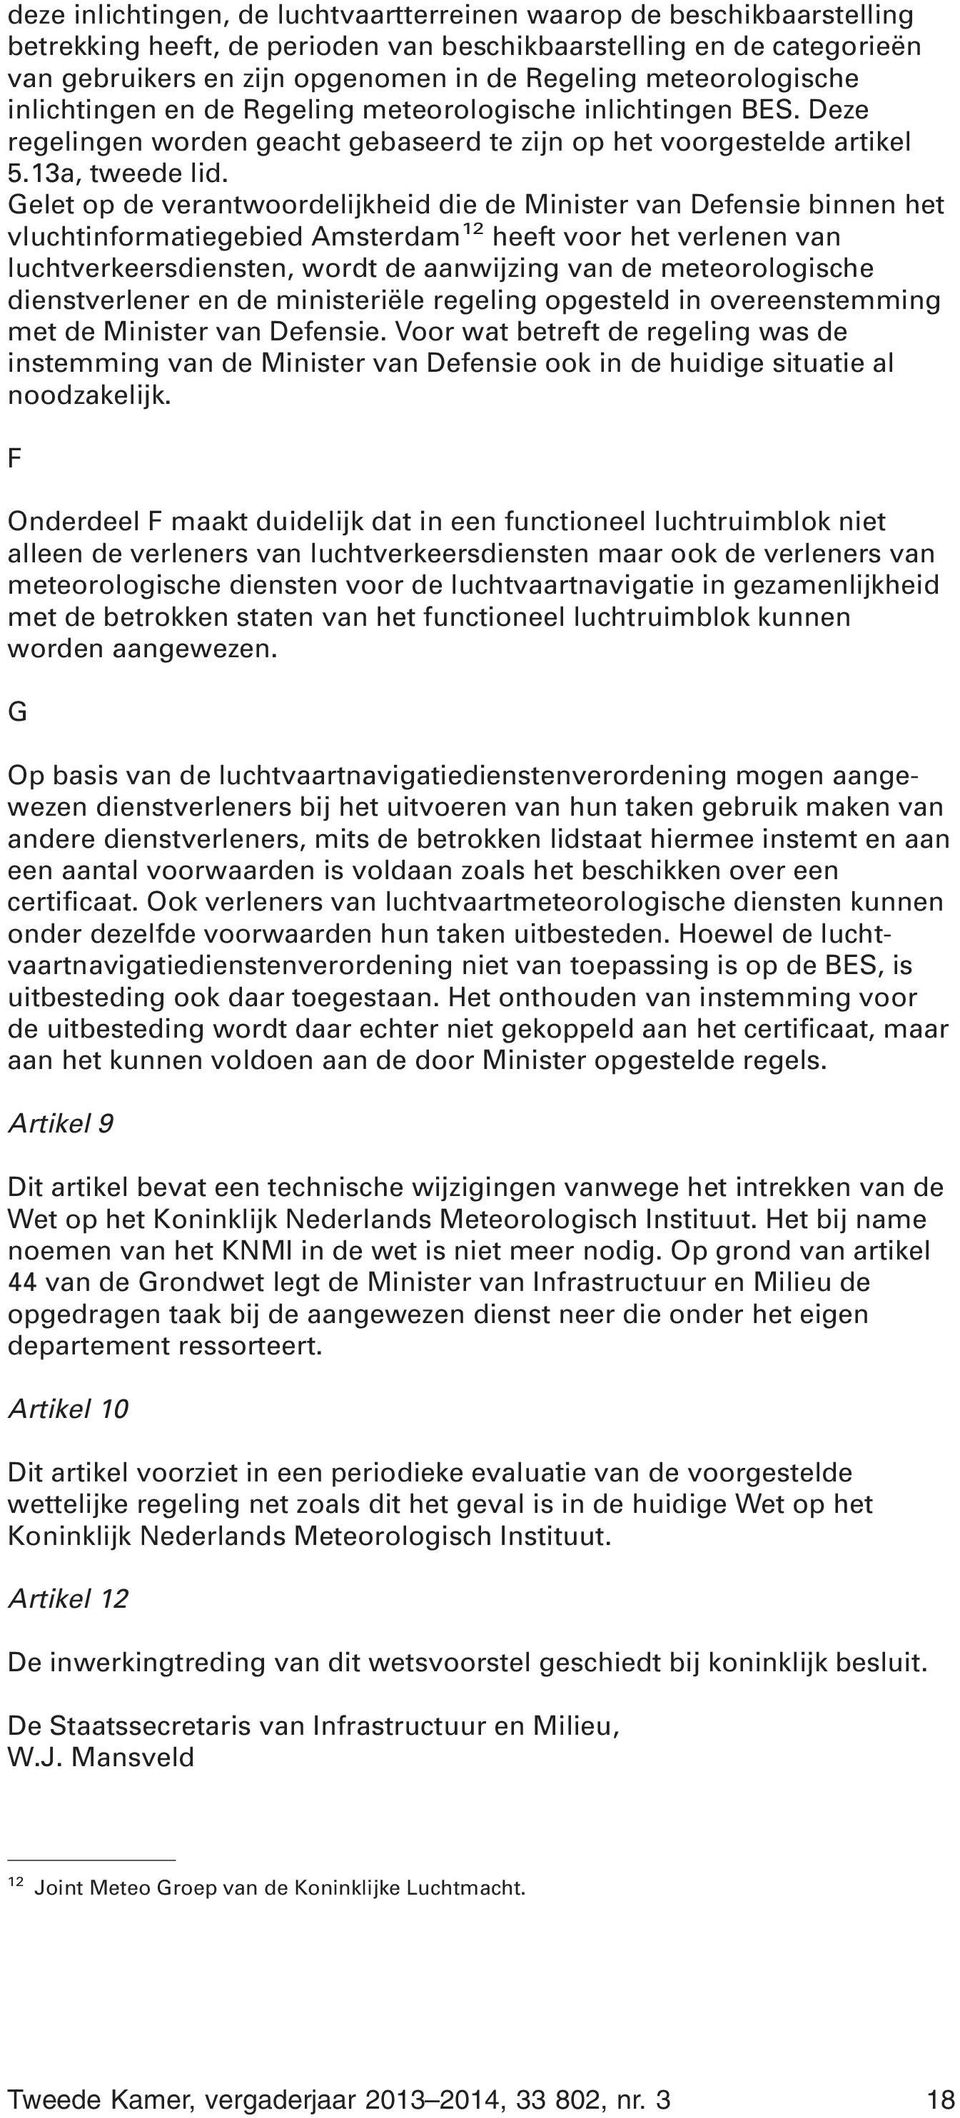 Gelet op de verantwoordelijkheid die de Minister van Defensie binnen het vluchtinformatiegebied Amsterdam 12 heeft voor het verlenen van luchtverkeersdiensten, wordt de aanwijzing van de